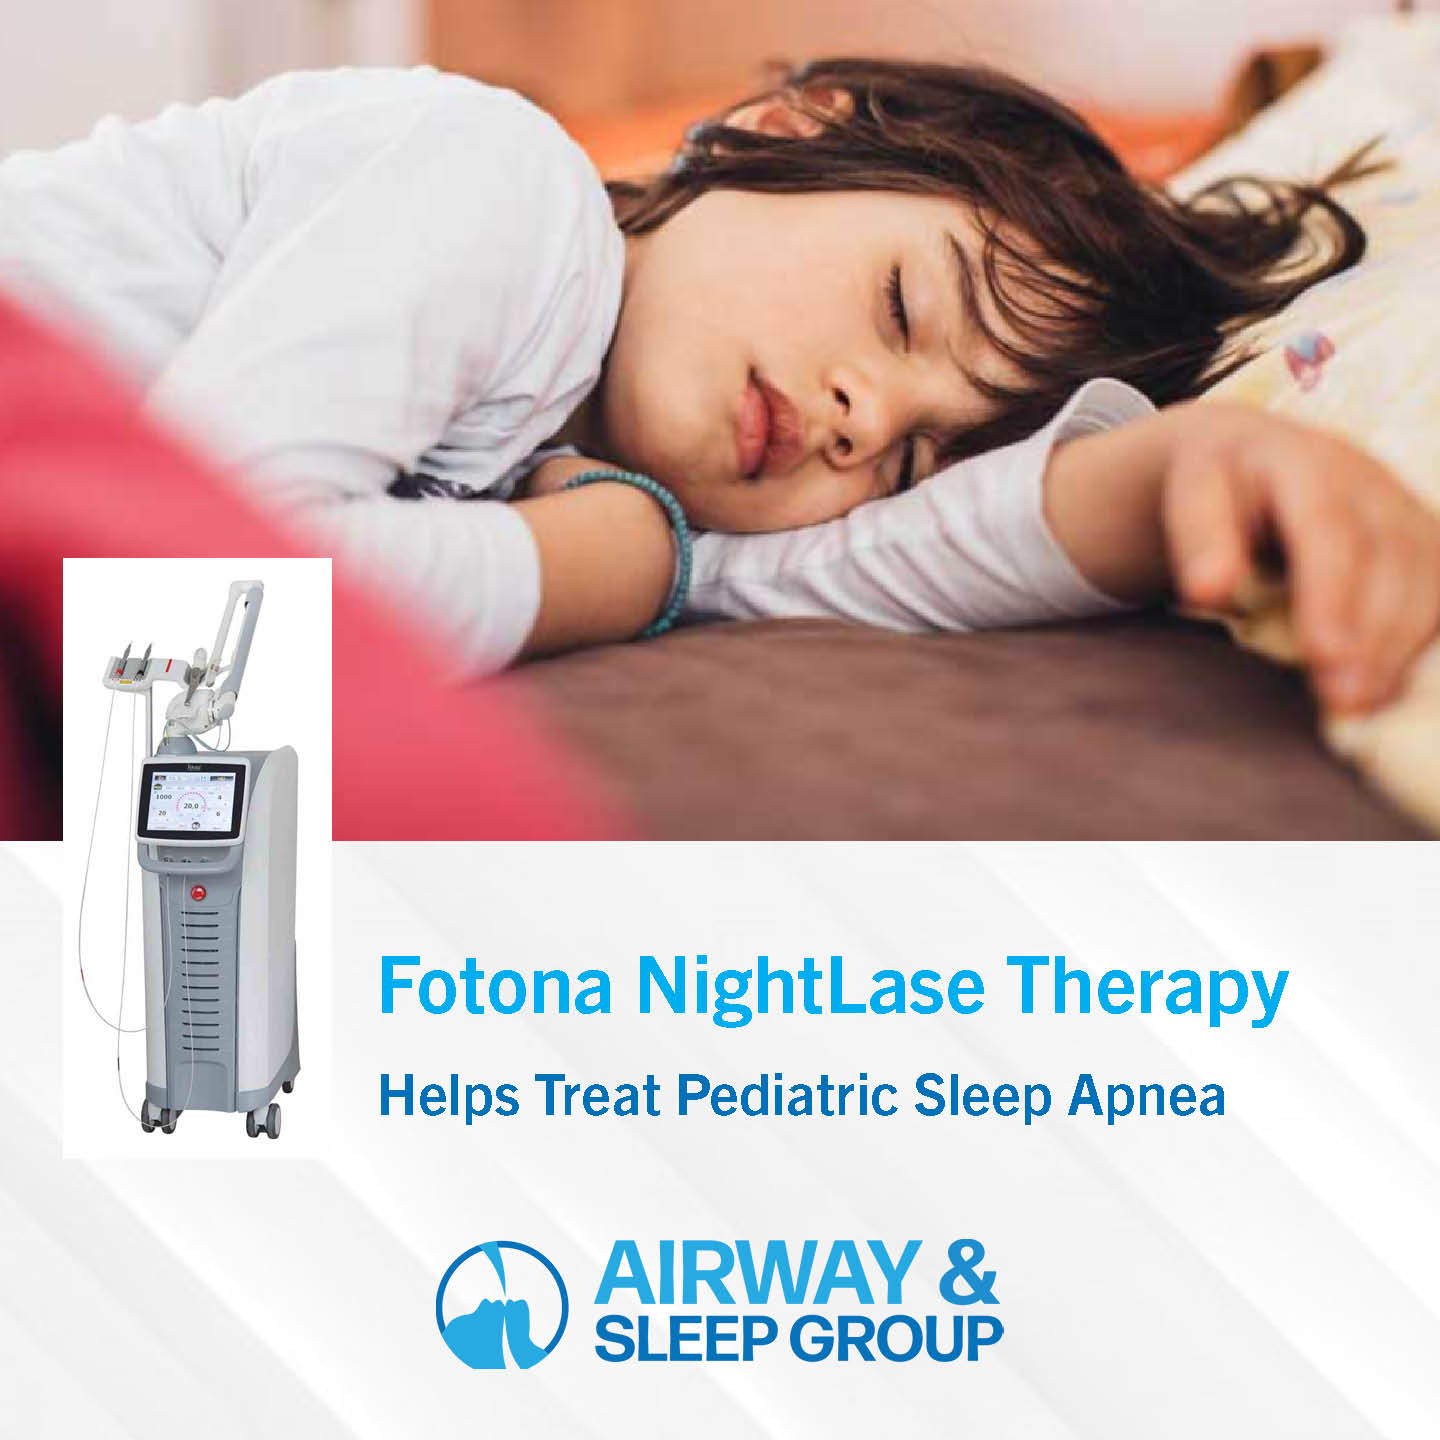 Fotona NightLase therapy for pediatric sleep apnea